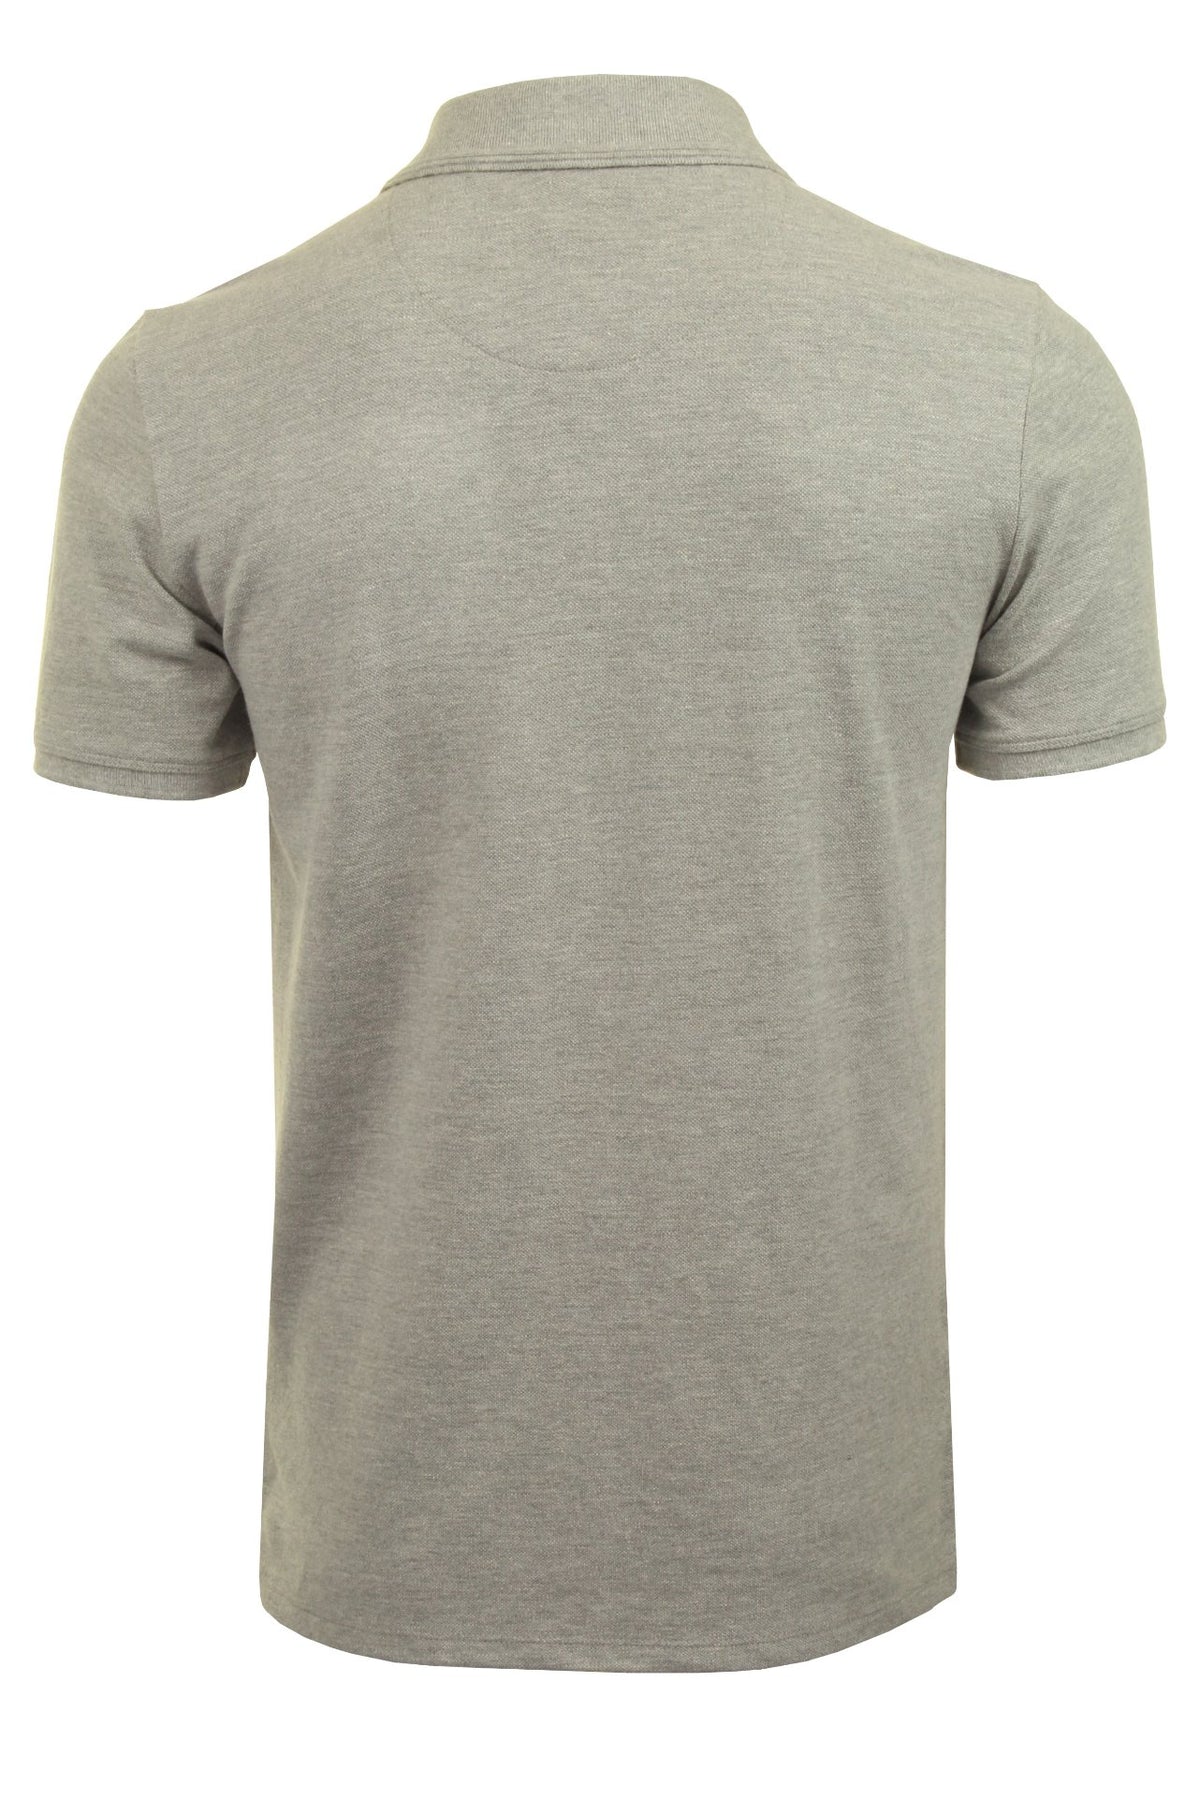 O'Neill Mens Pique Polo T-Shirt, 03, 9A2402, Silver Melee